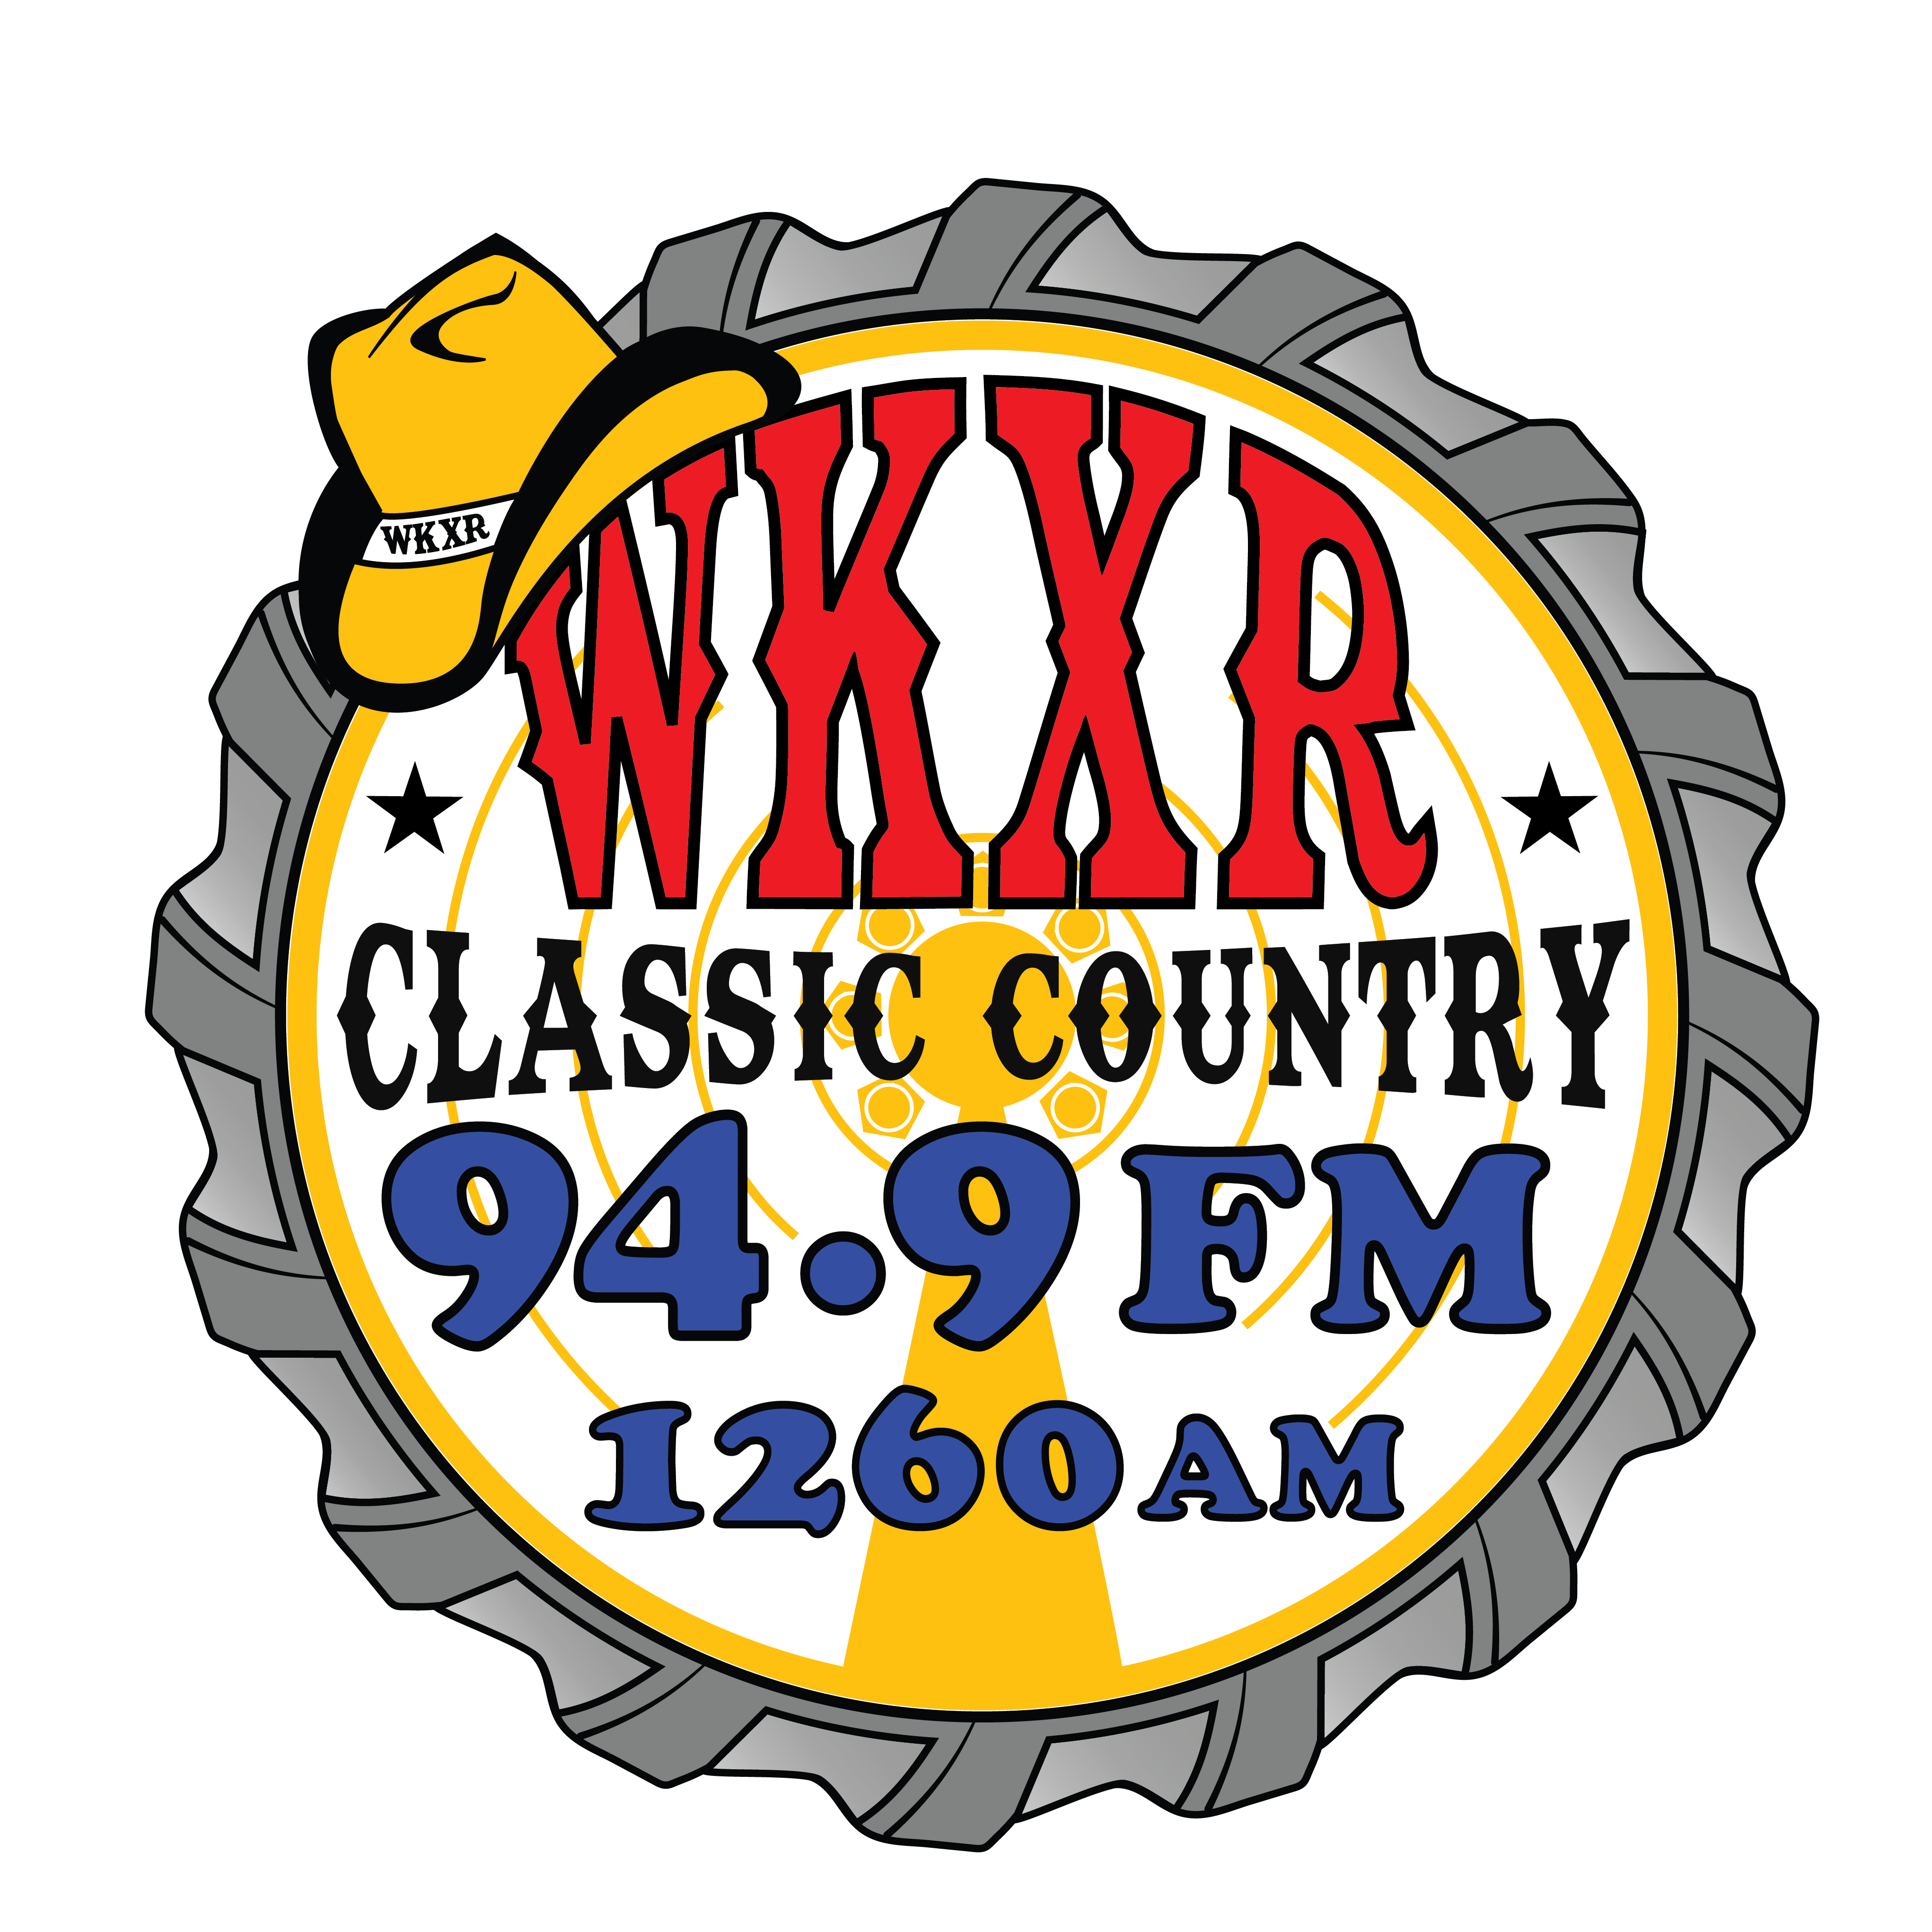 WKXR 94.9 FM/1260 AM